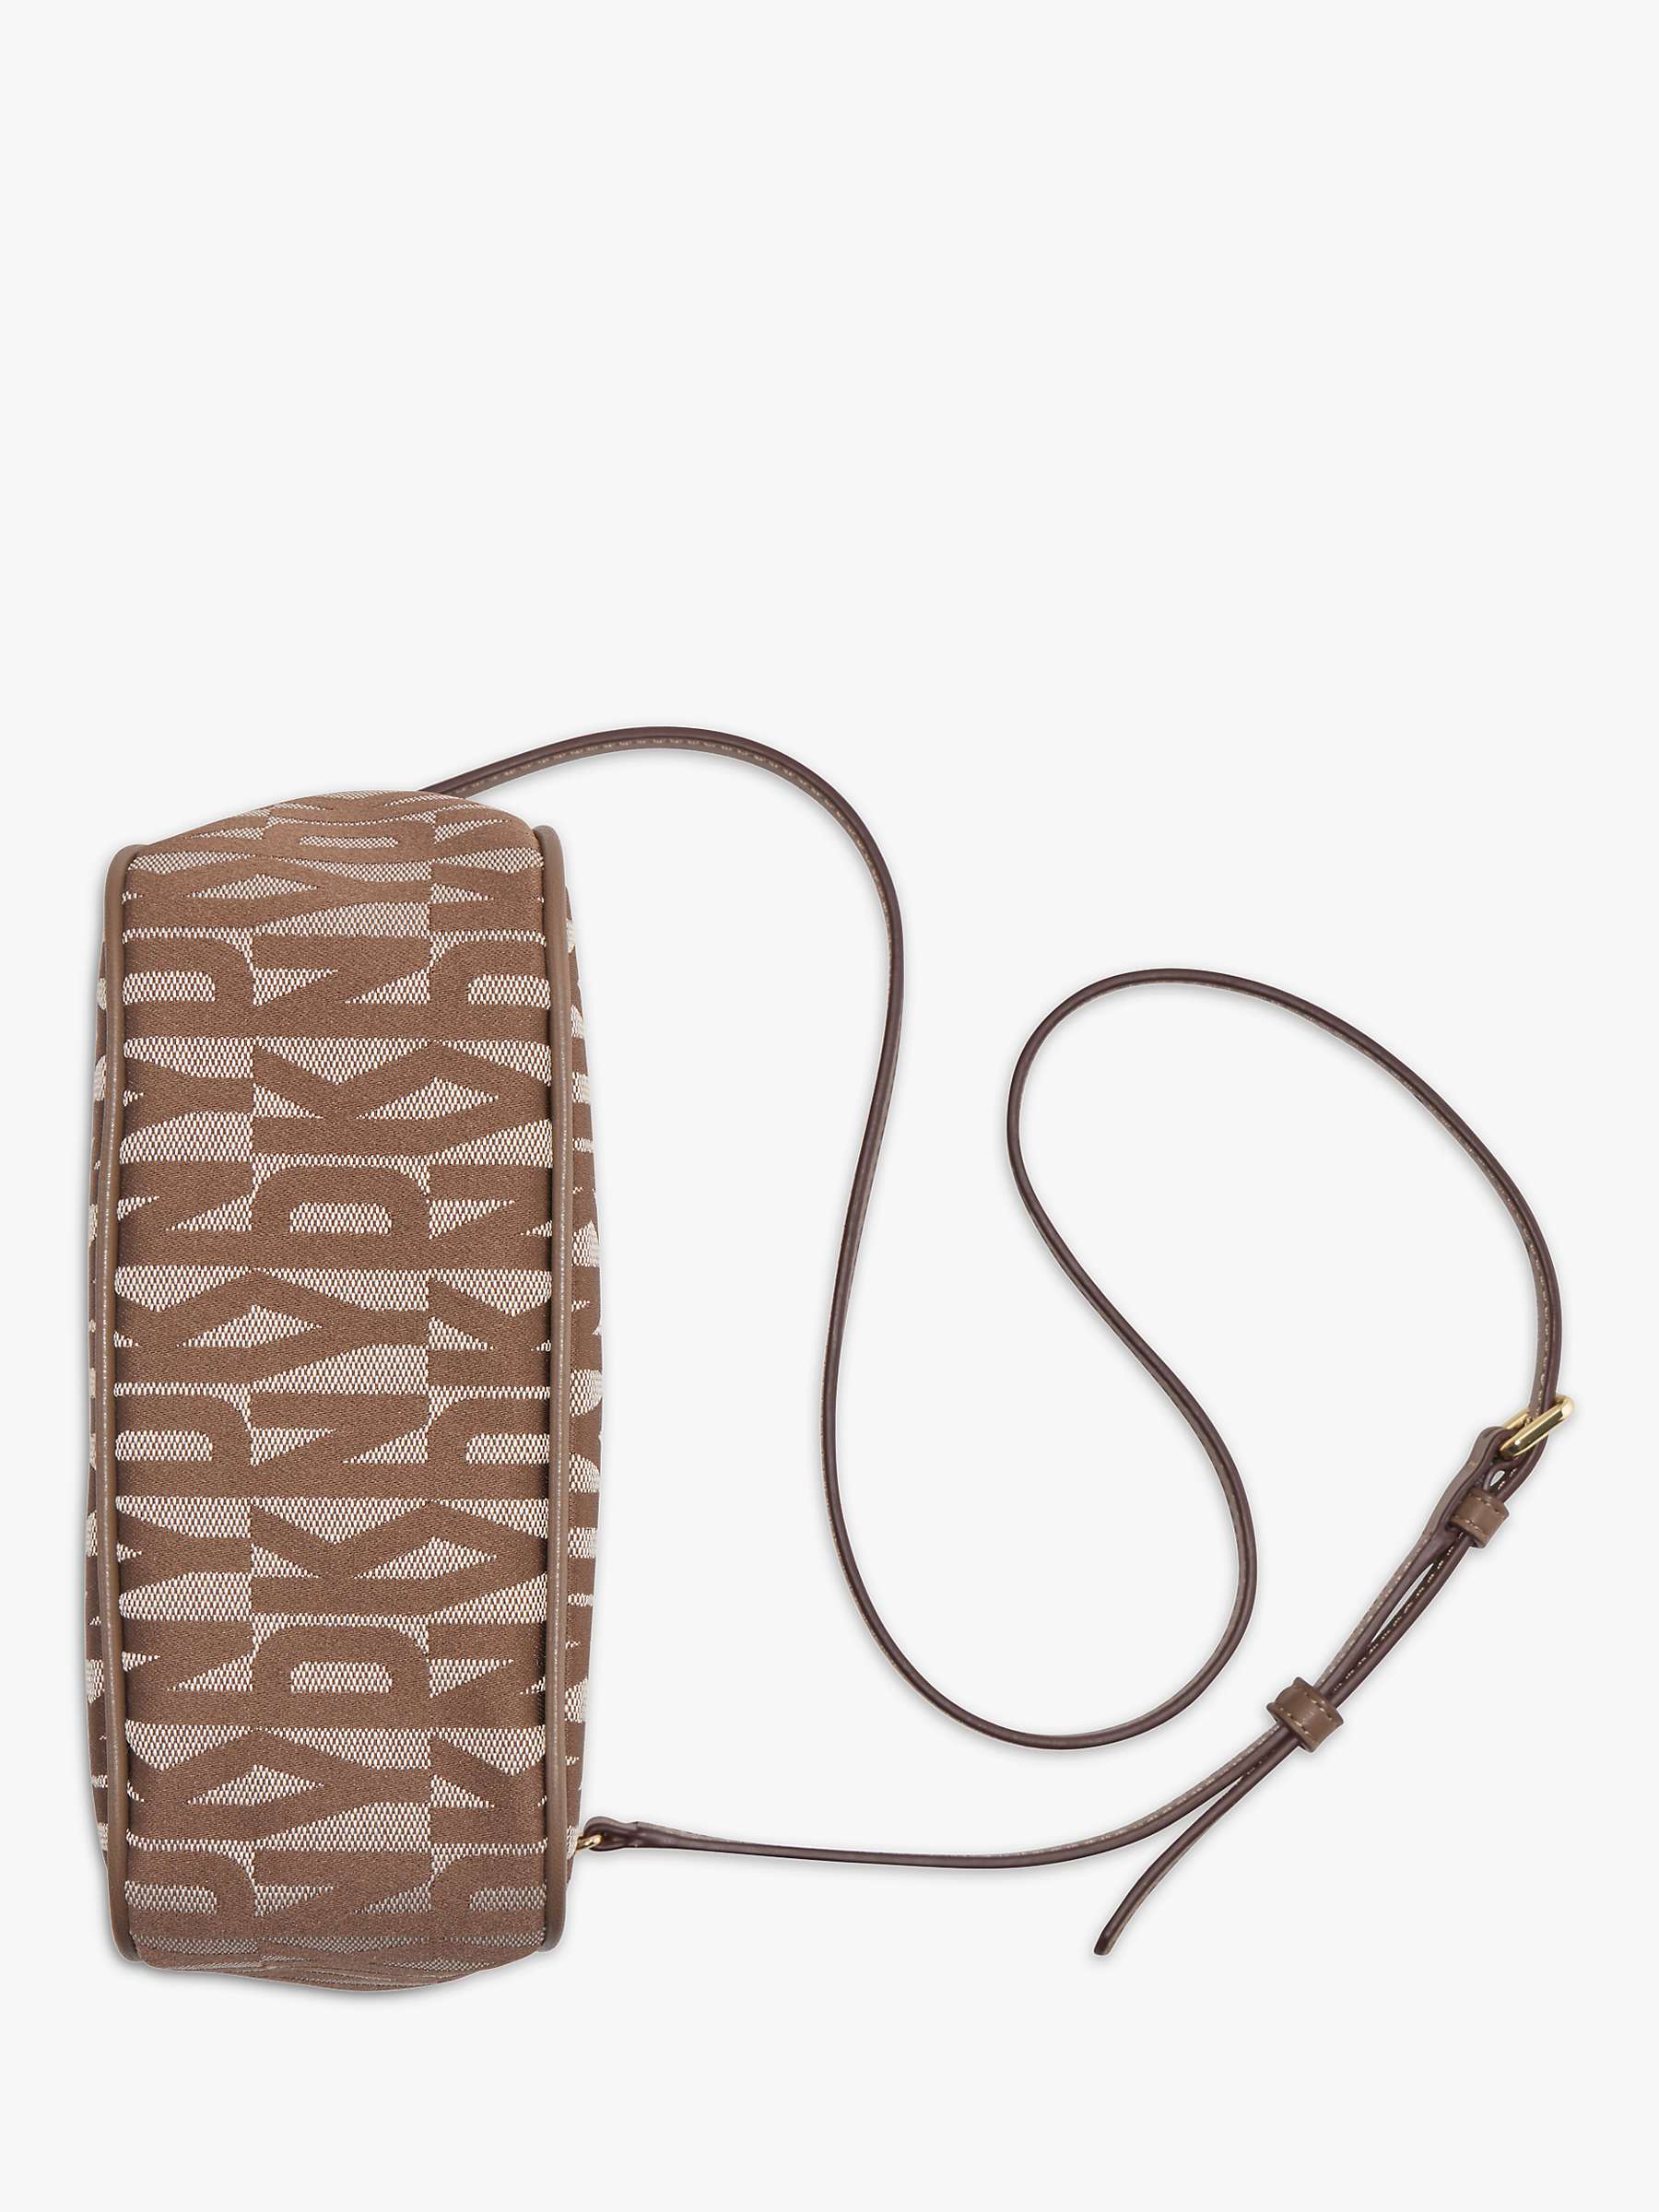 DKNY Alexa Logo Crossbody Bag, Chino/Truffle at John Lewis & Partners